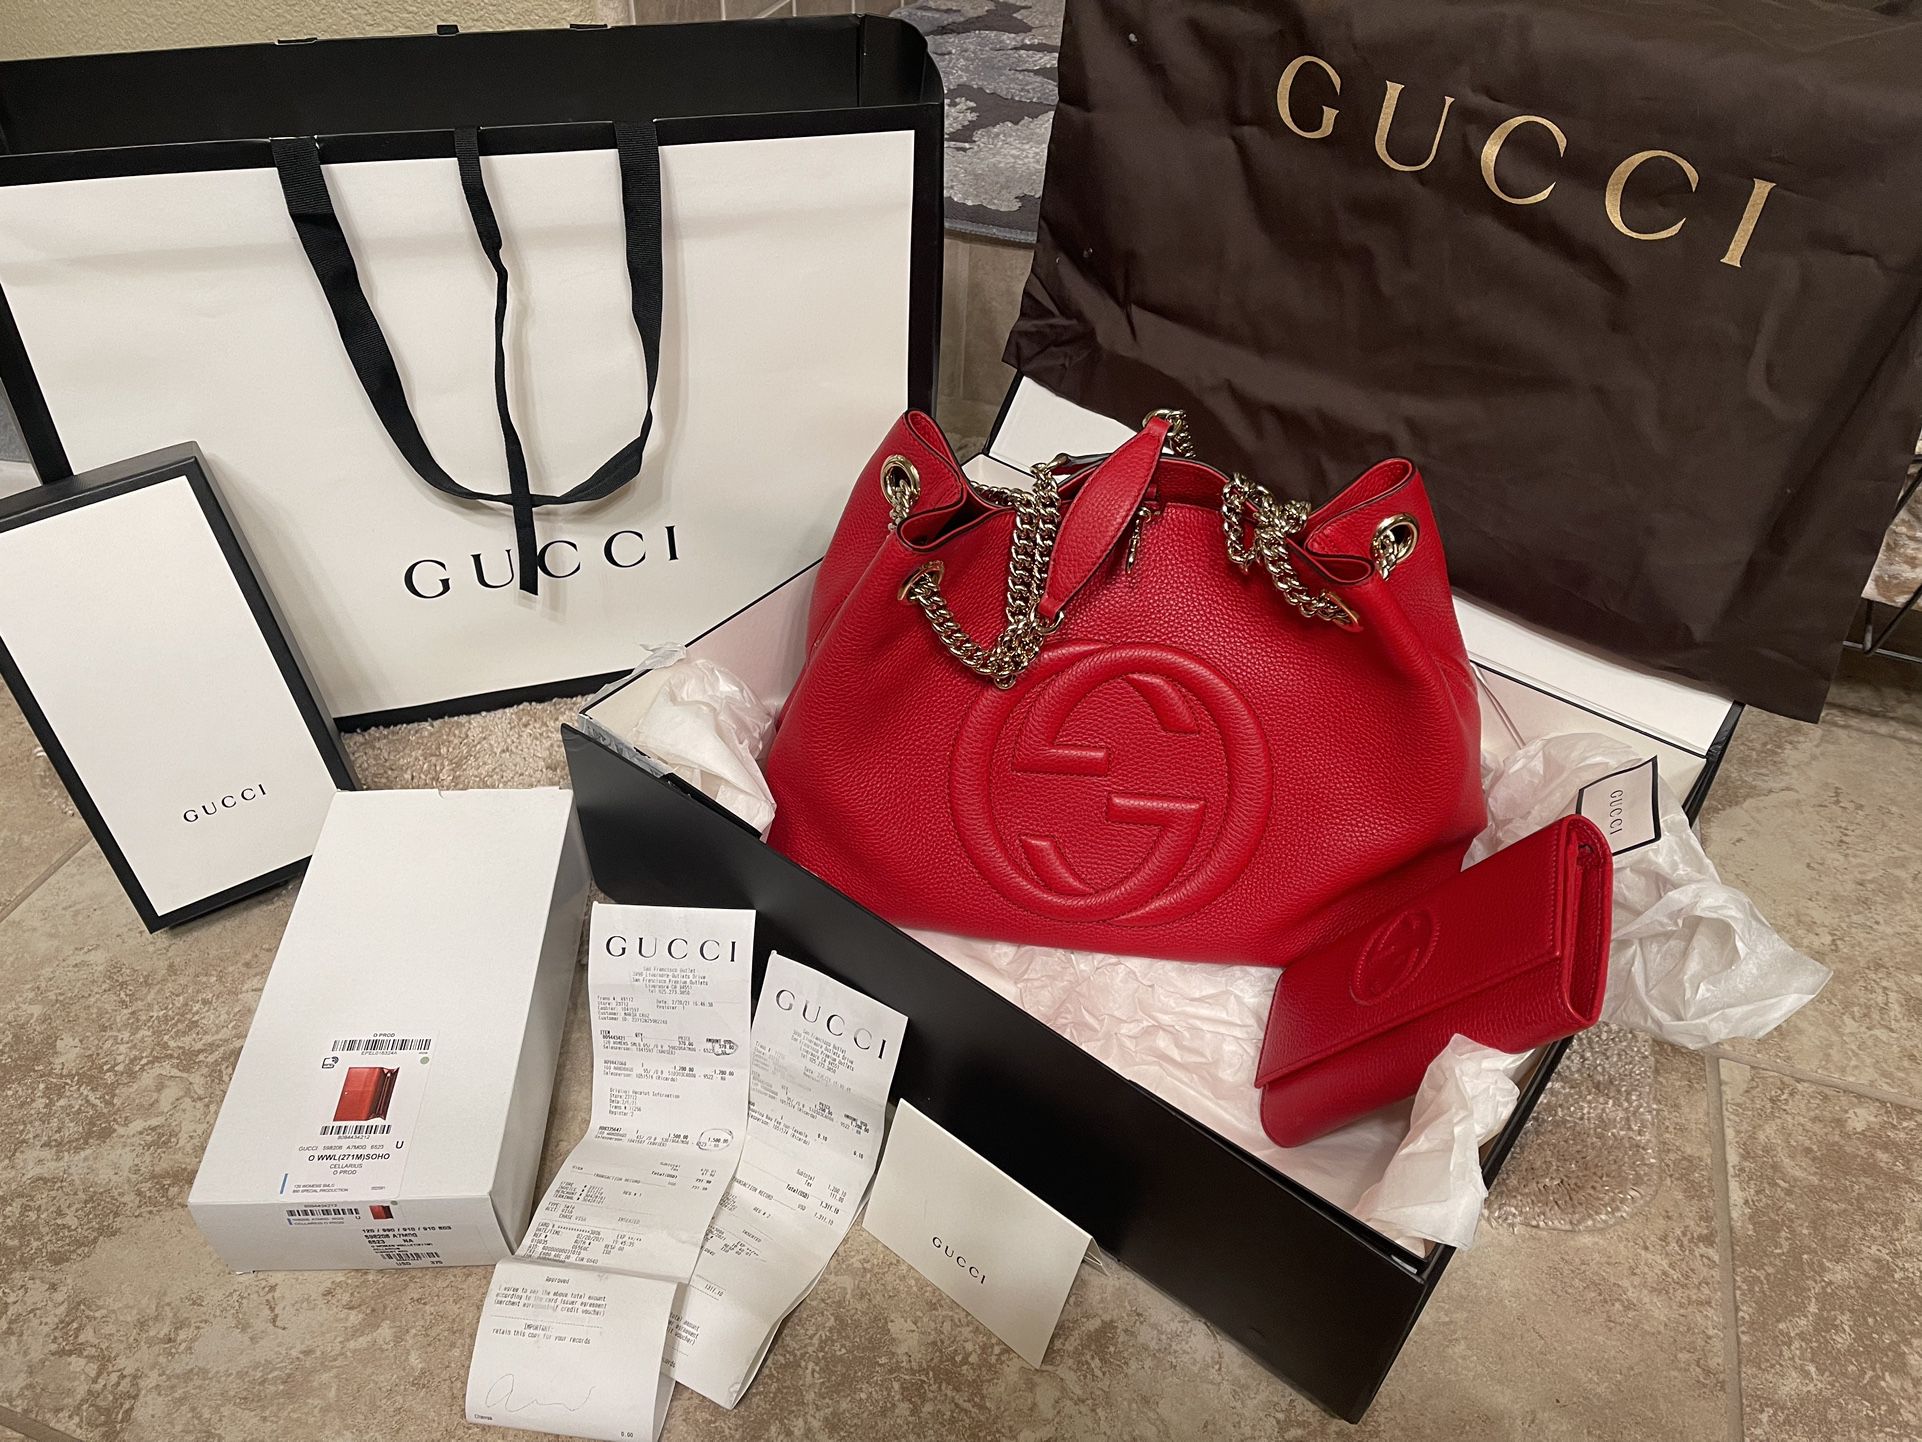 Gucci Handbag And The Wallet